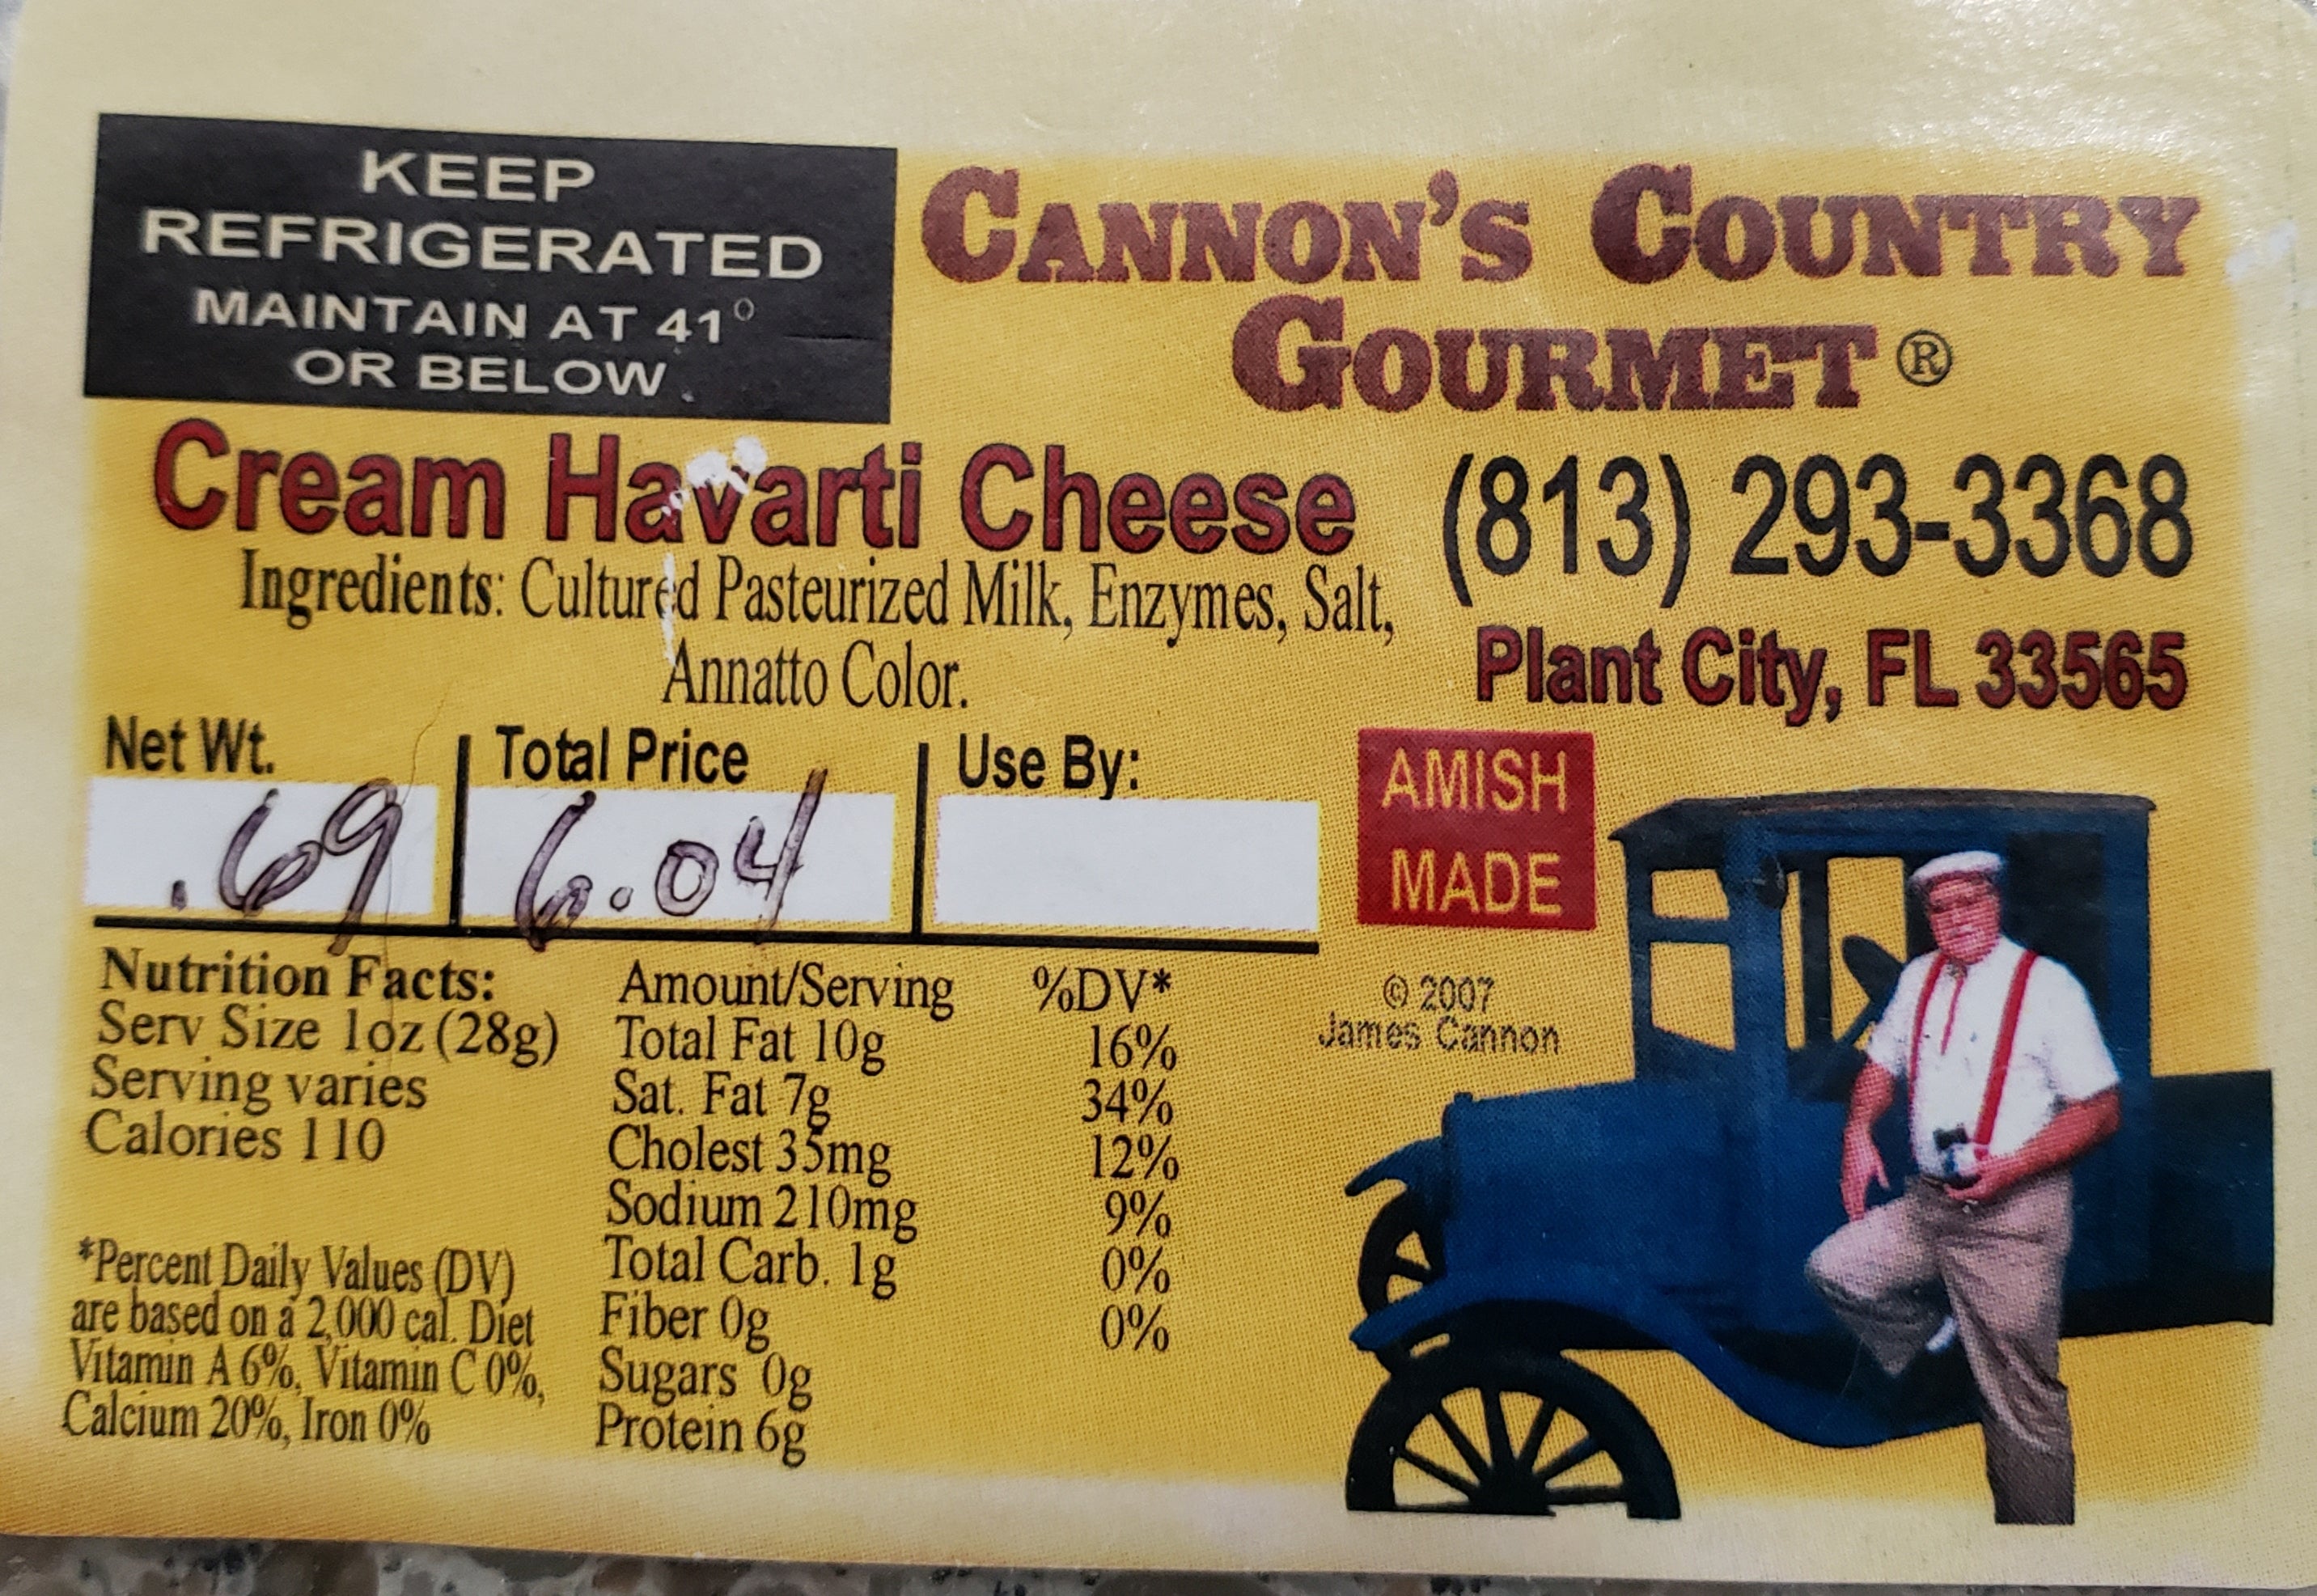 Amish - Cheese - Cream Havarti $6.42 per 1/2 lb.